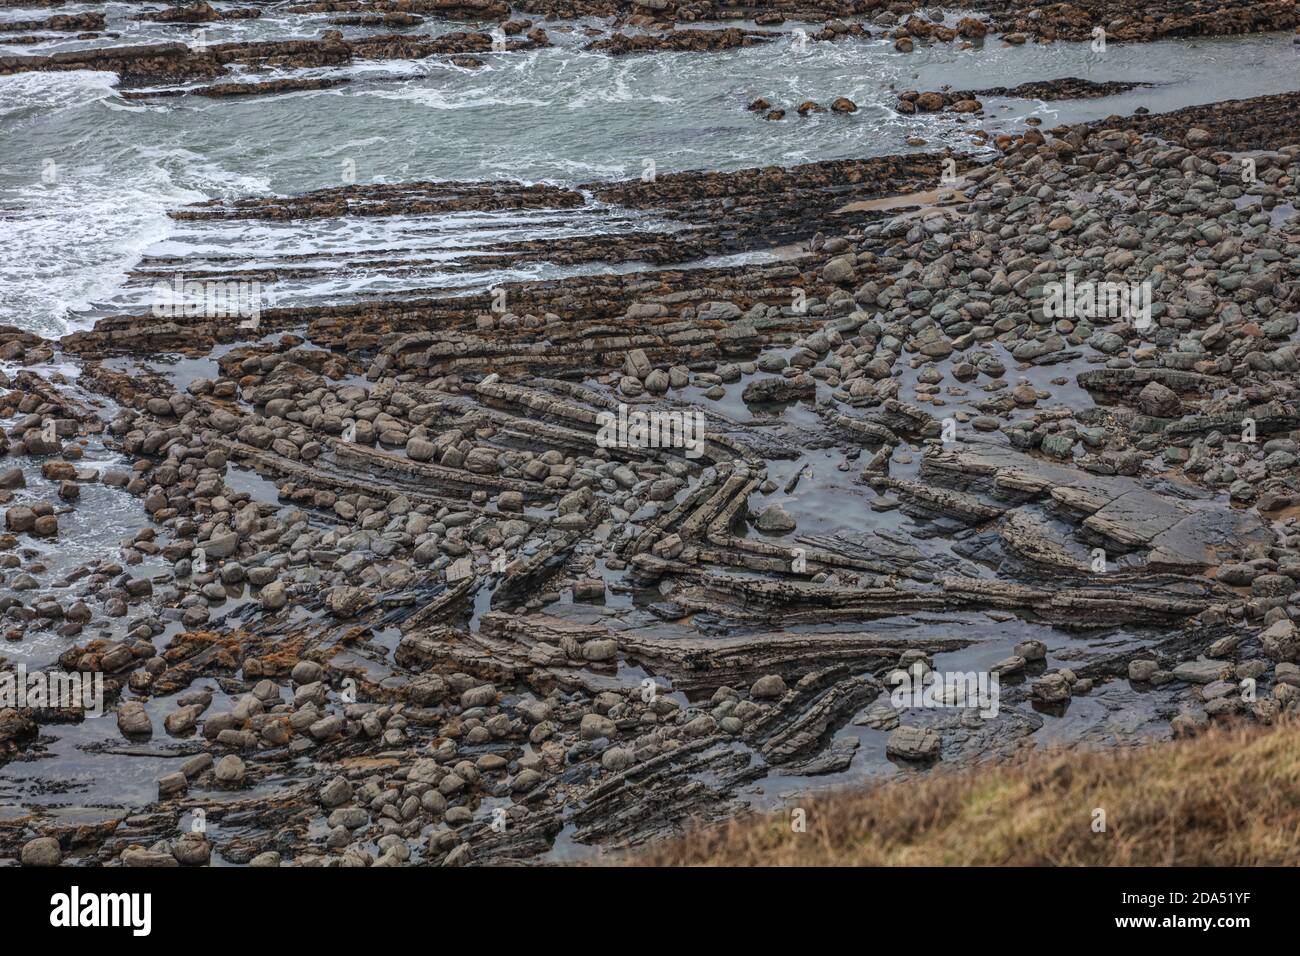 Millook Haven mostra il miglior esempio di difetti di chevron nelle isole britanniche. Foto Stock